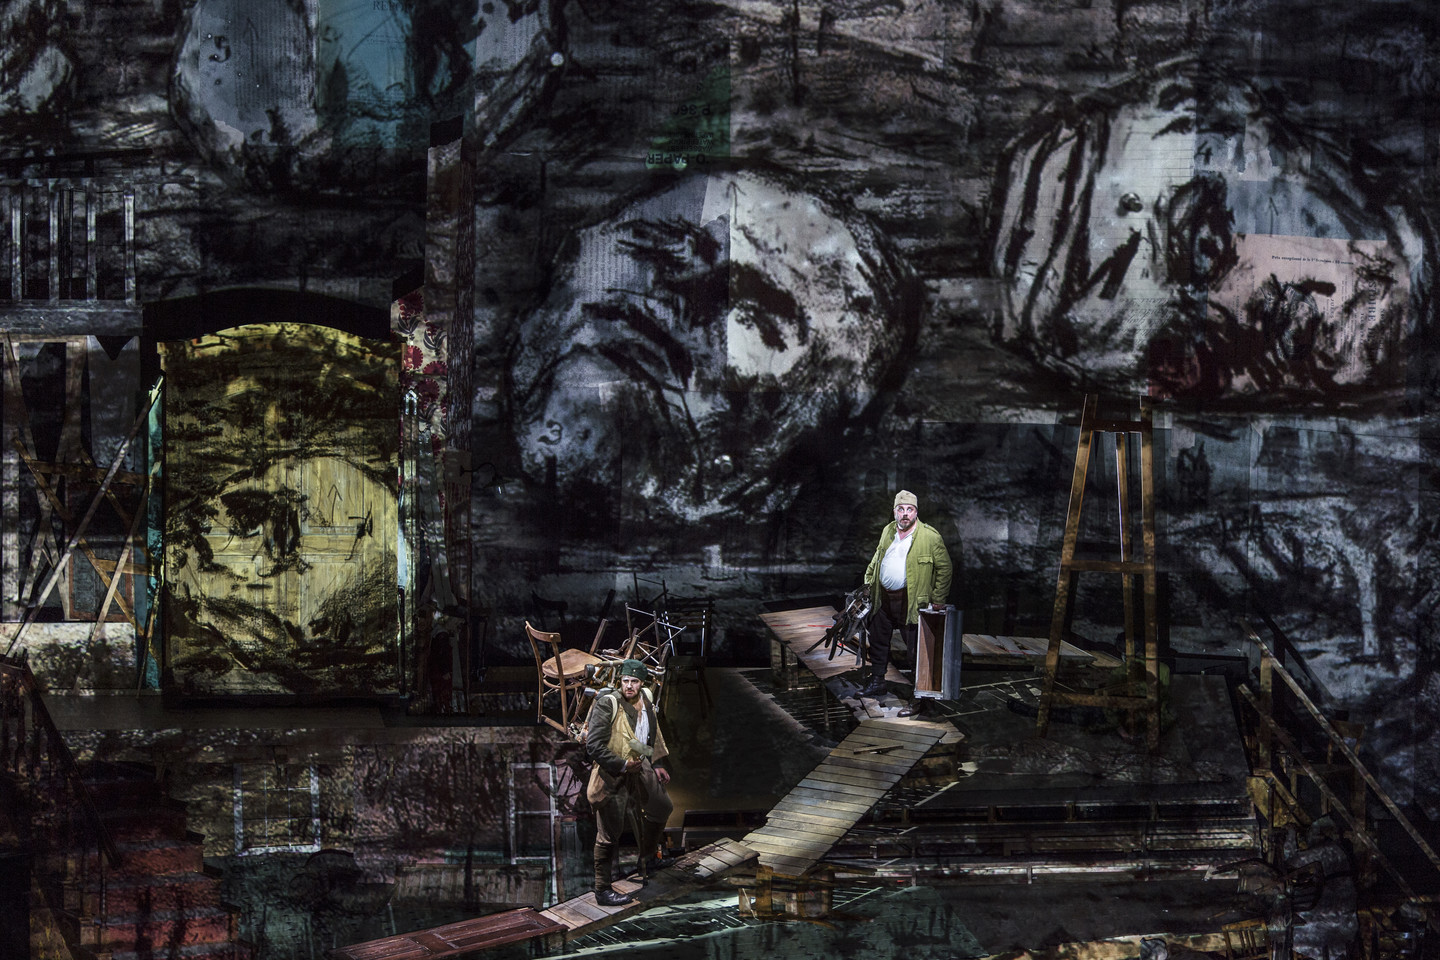 Žymaus Pietų Afrikos Respublikos dailininko W.Kentridge’o režisuotas operos spektaklis įtraukia kaip makabriška haliucinacija.<br>Zalcburgo festivalio nuotr.